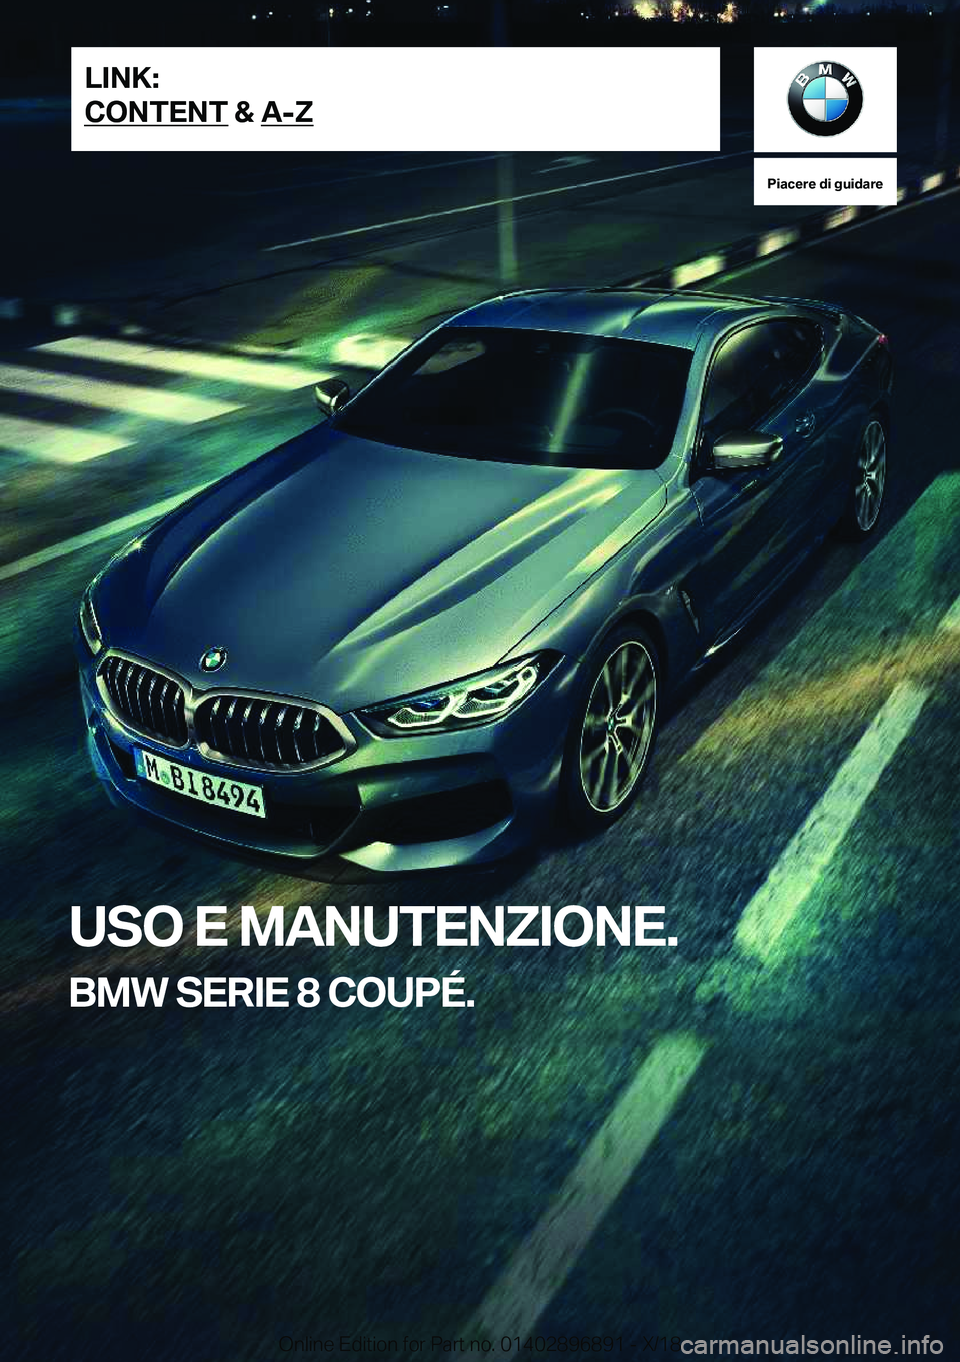 BMW 8 SERIES COUPE 2019  Libretti Di Uso E manutenzione (in Italian) �P�i�a�c�e�r�e��d�i��g�u�i�d�a�r�e
�U�S�O��E��M�A�N�U�T�E�N�Z�I�O�N�E�.
�B�M�W��S�E�R�I�E��8��C�O�U�P�